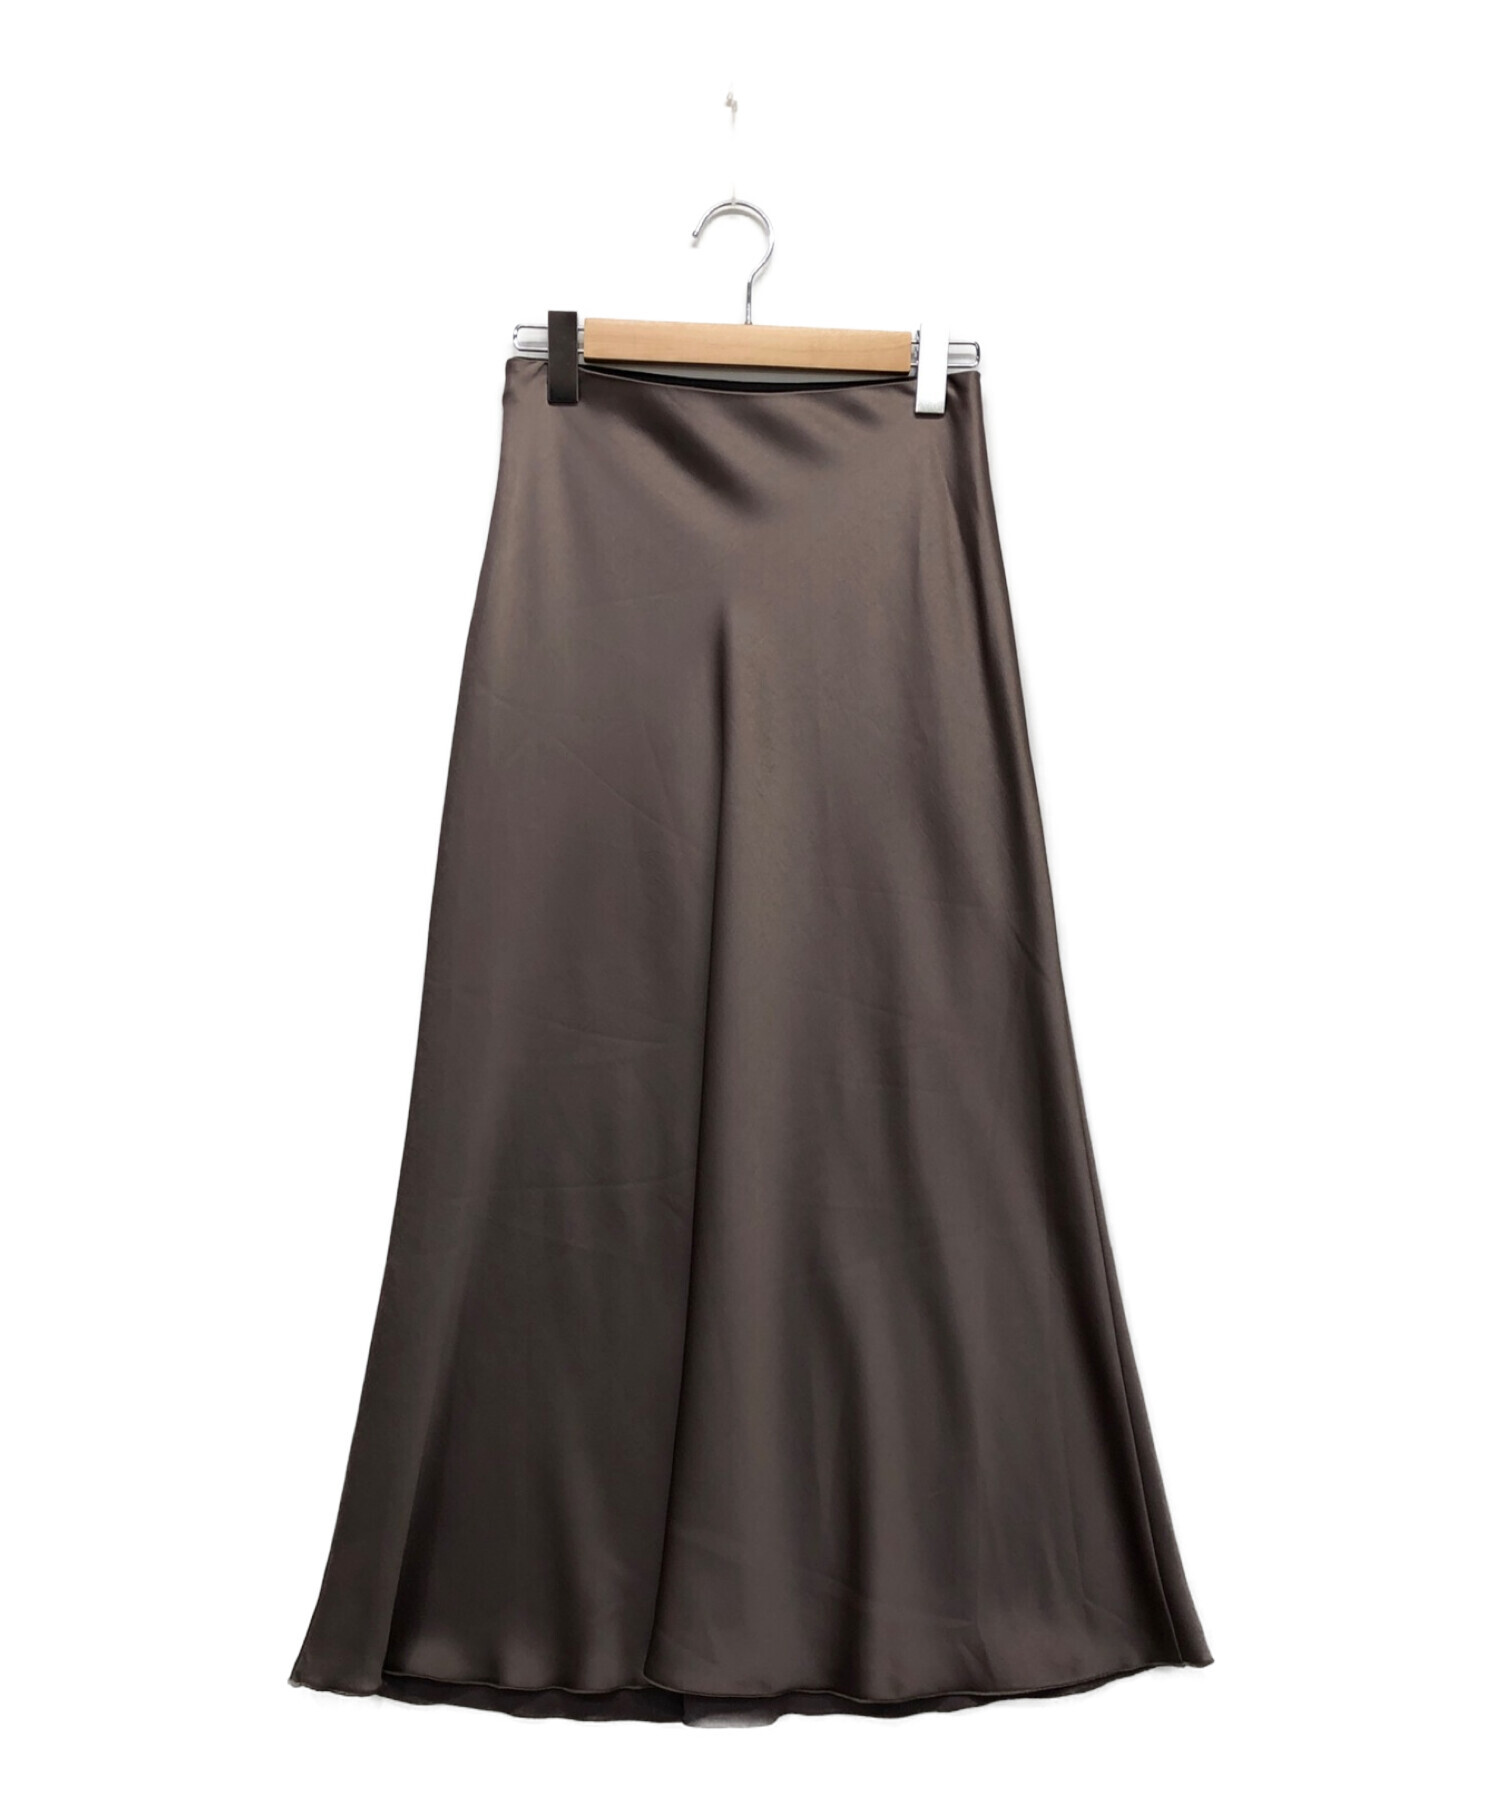 GALLARDA GALANTE (ガリャルダガランテ) サテンマーメイドスカート ブラウン サイズ:1